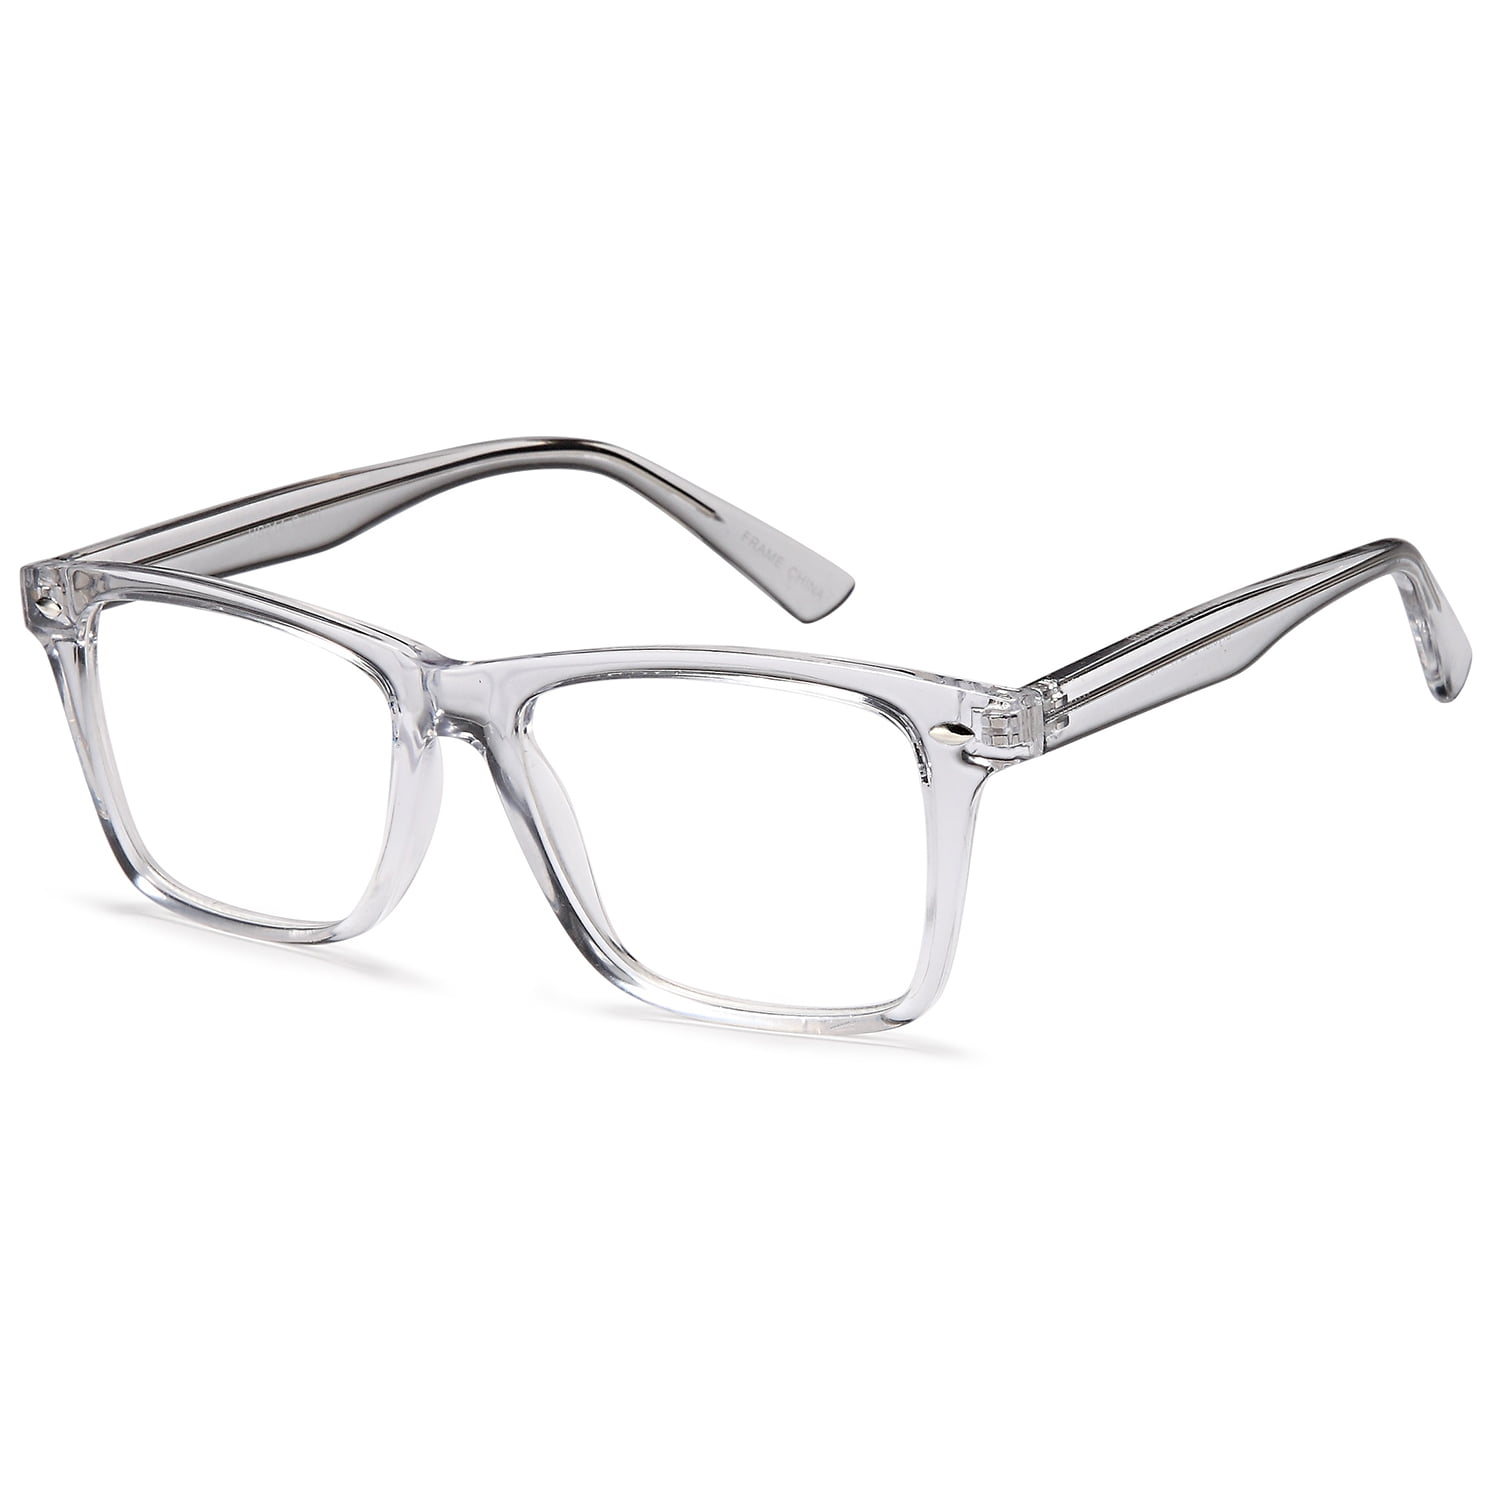 Unisex Eyeglasses 54 17 145 Crystal Plastic